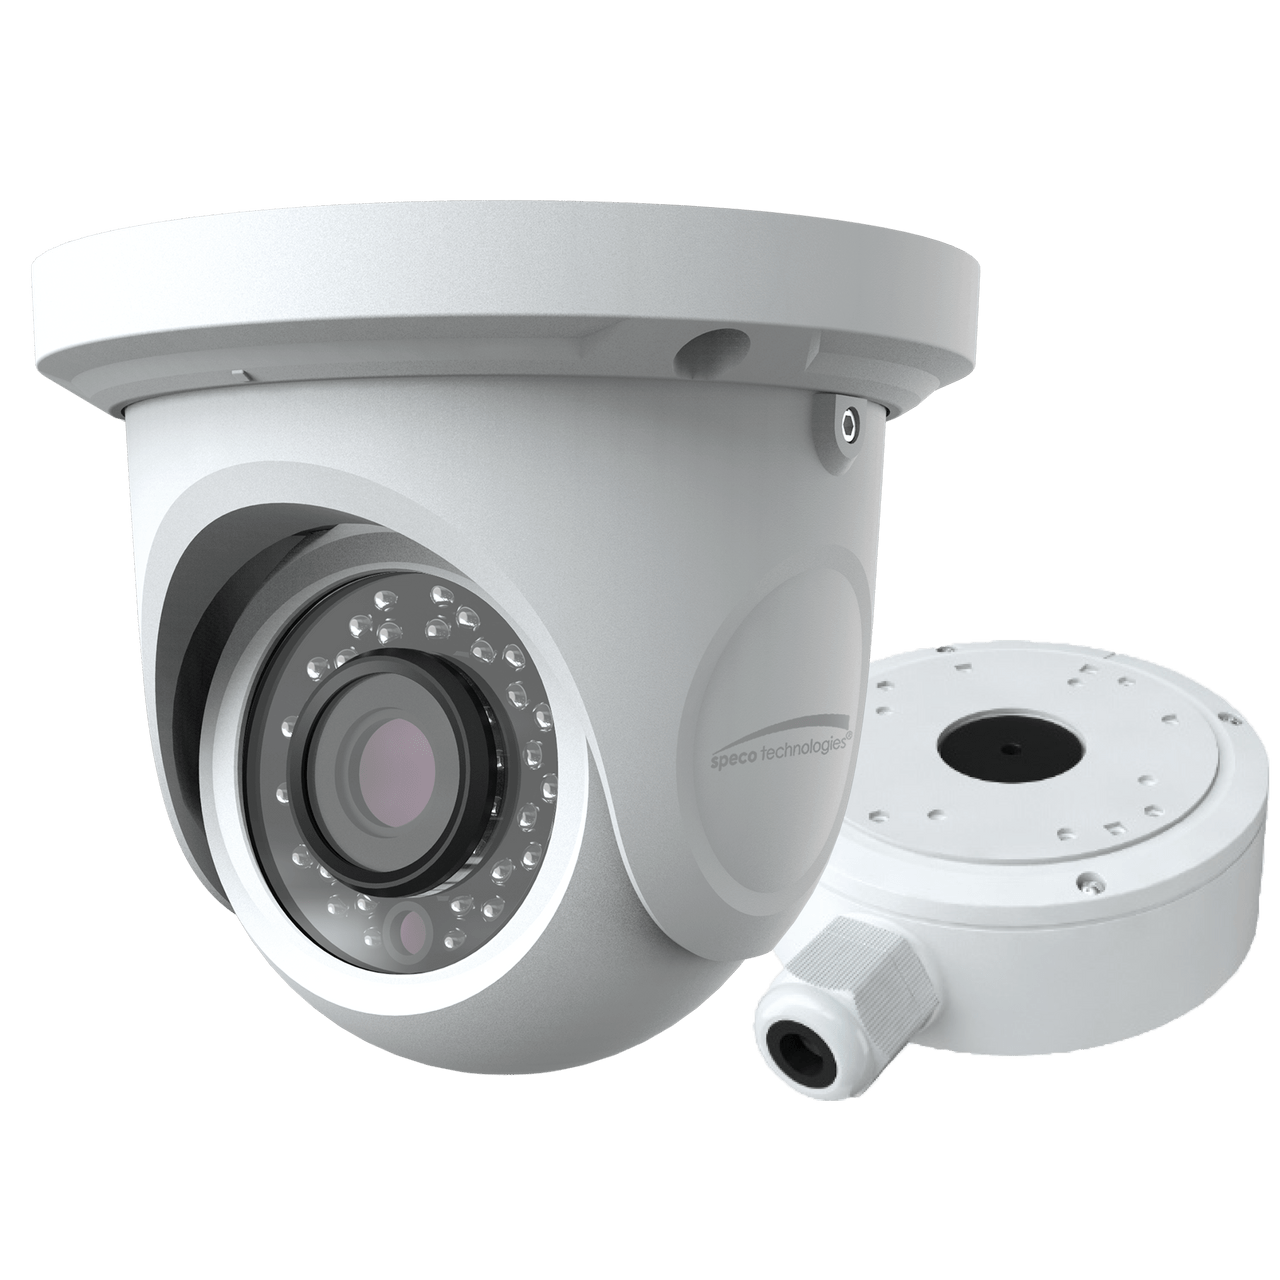 Speco Technologies VLT7W 2MP HD-TVI Turret Camera, IR, 2.8mm lens, White housing, Included Junc Box (VLT7W)